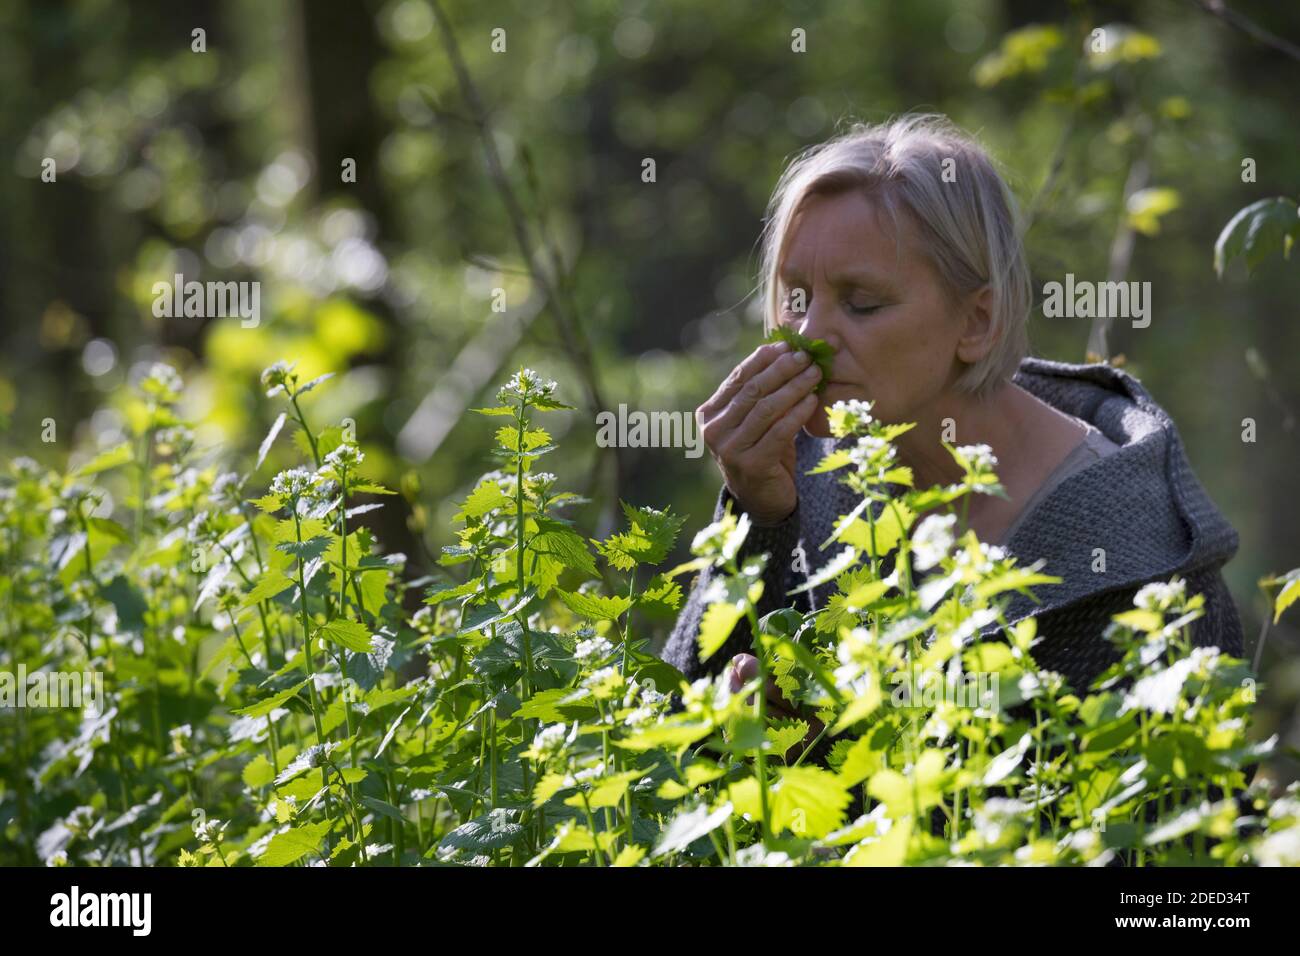 Senape all'aglio, aglio all'orlo, Jack-by-the-Hedge (Alliaria petiolata), donna che raccoglie la senape all'aglio in una foresta, annodando alle foglie, Germania Foto Stock